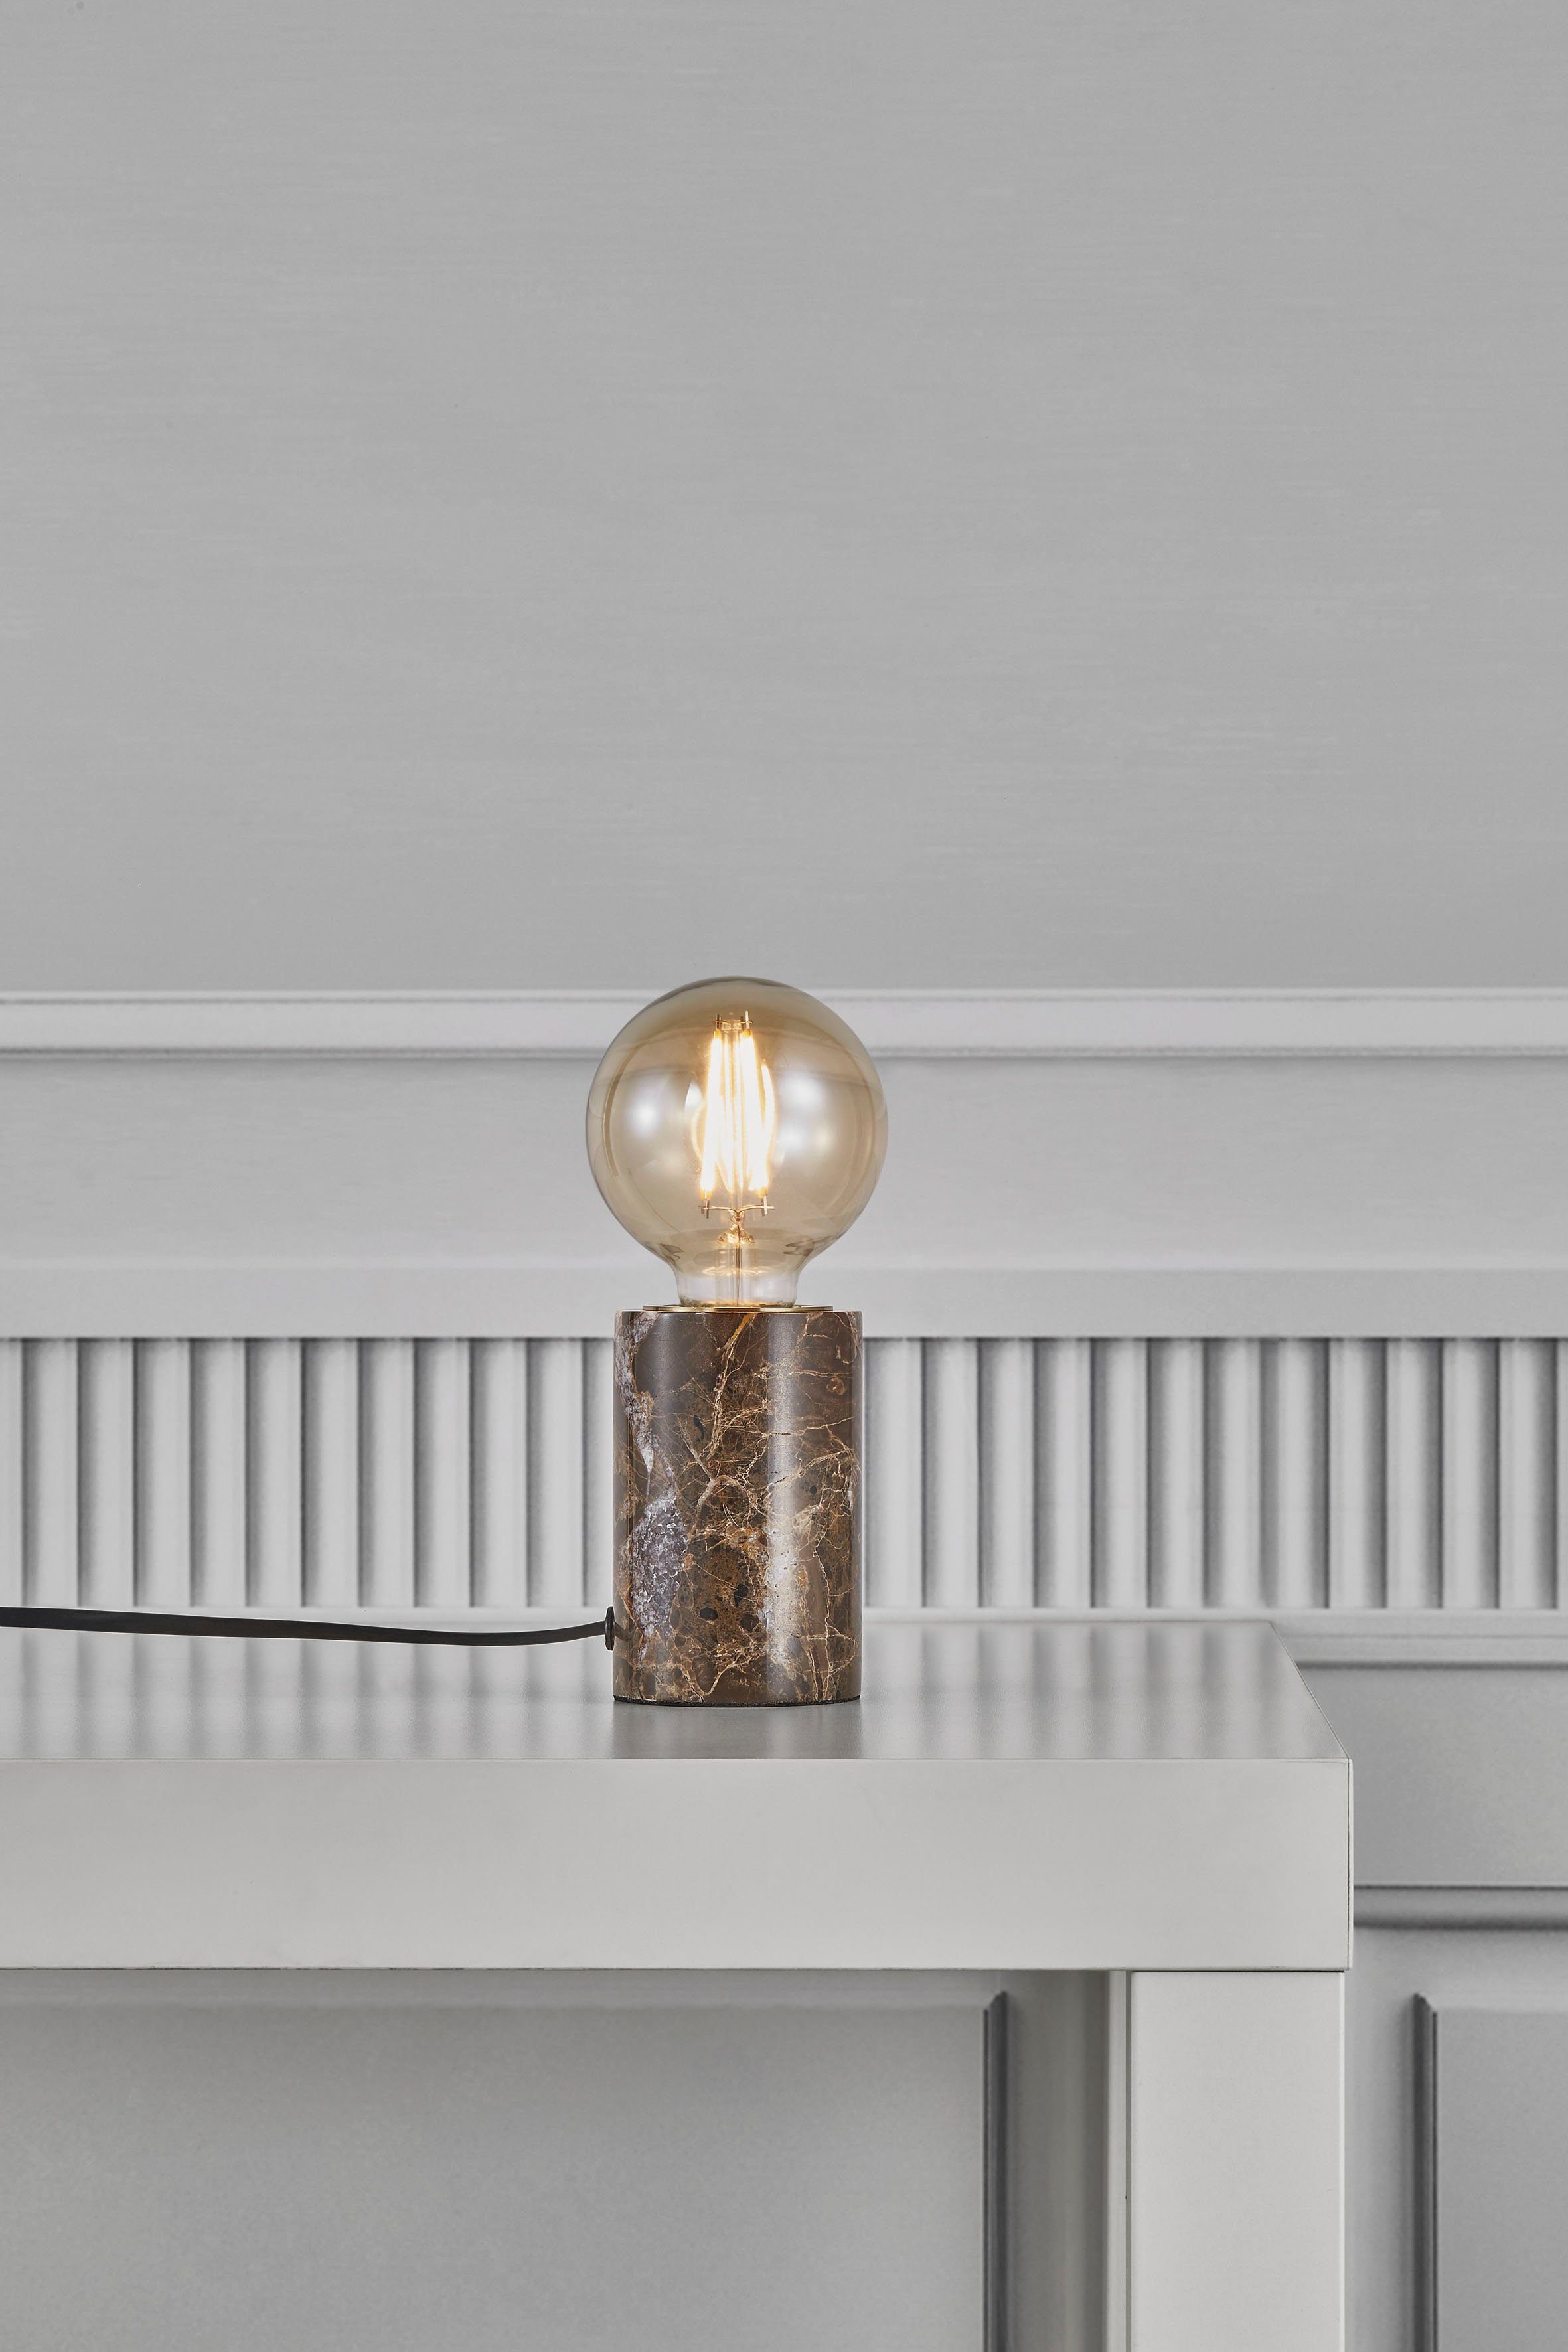 Nordlux Tischleuchte Siv Marble, ohne Leuchtmittel, Natürlicher Stil, einzigartige Marmorstruktur, für E27 LED Leuchmittel